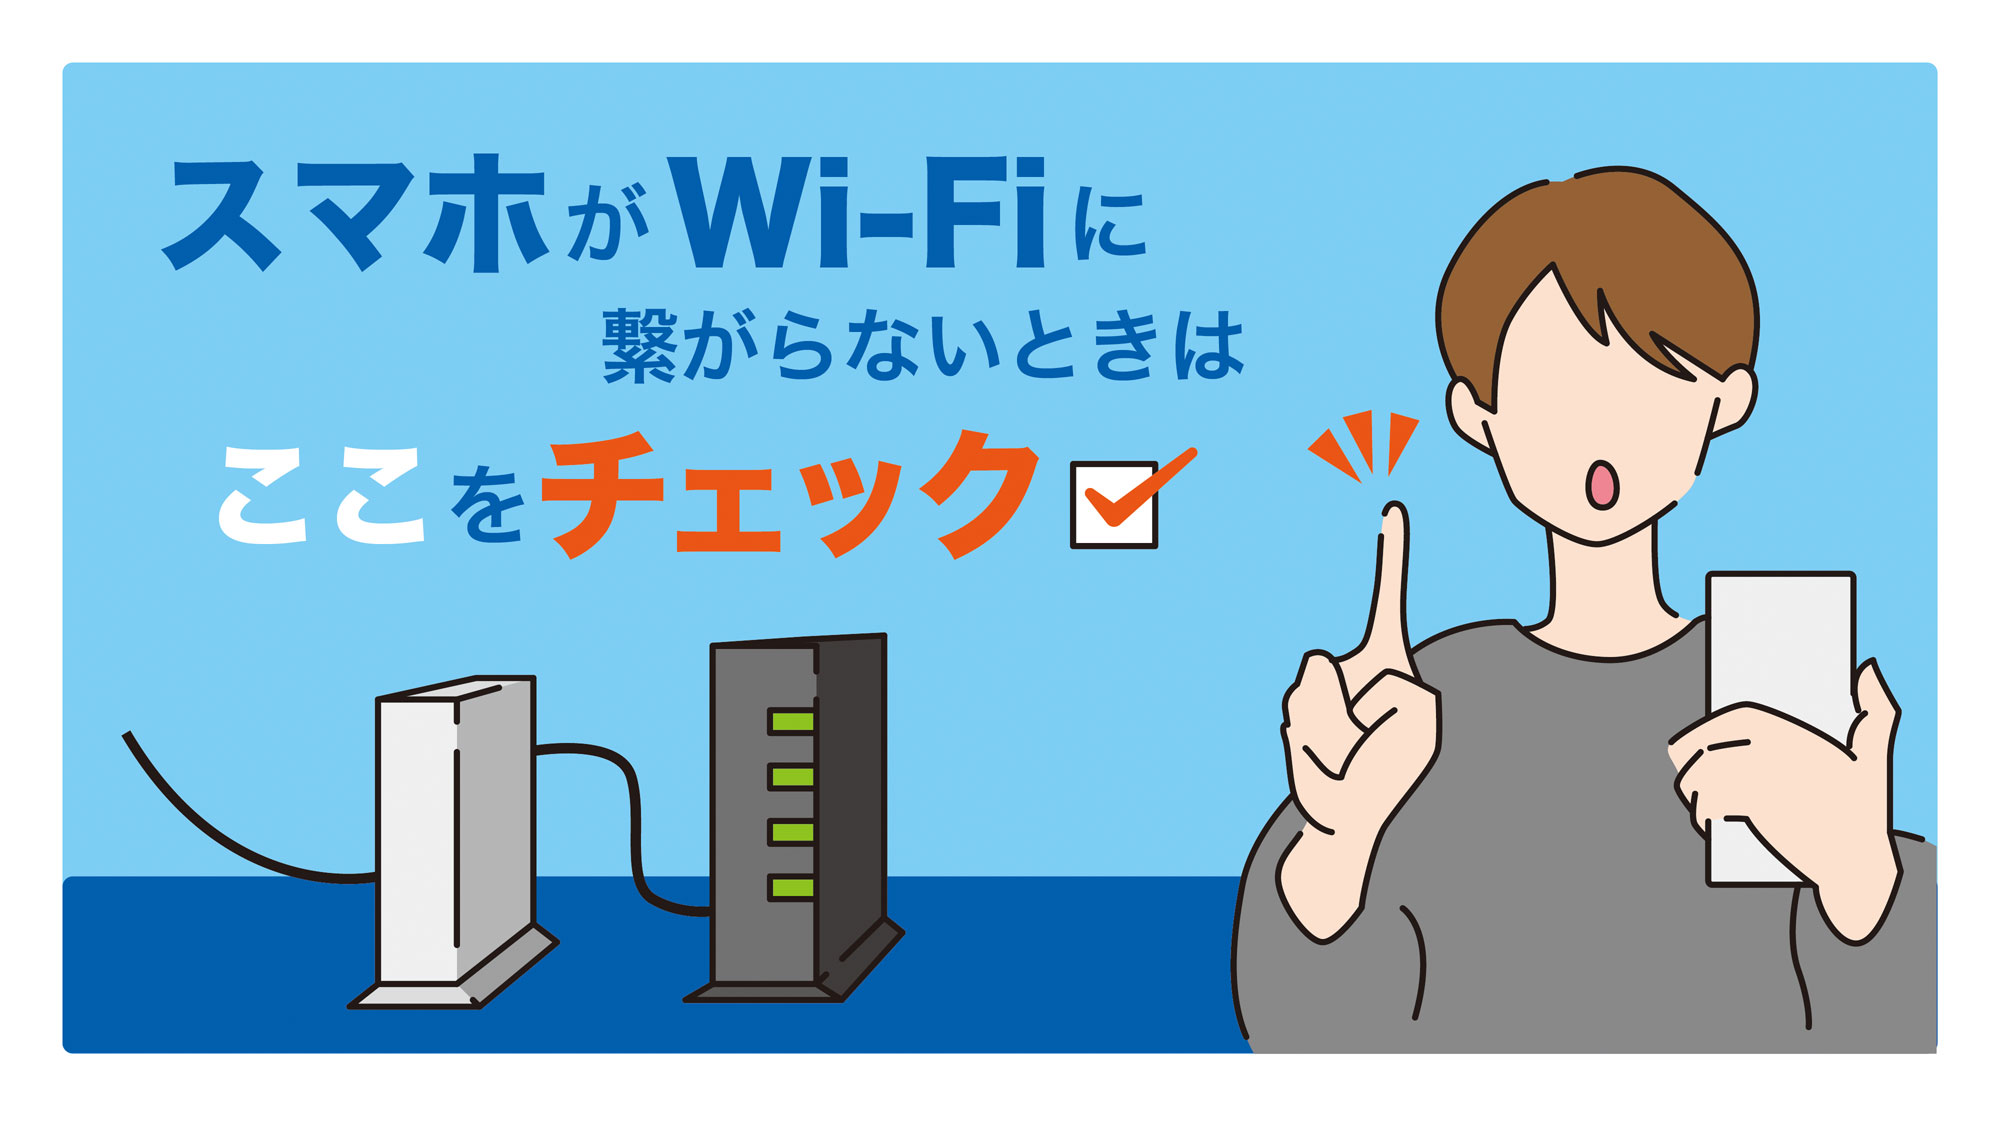 Wi-Fi が繋がりにくい時はどうすればいい？